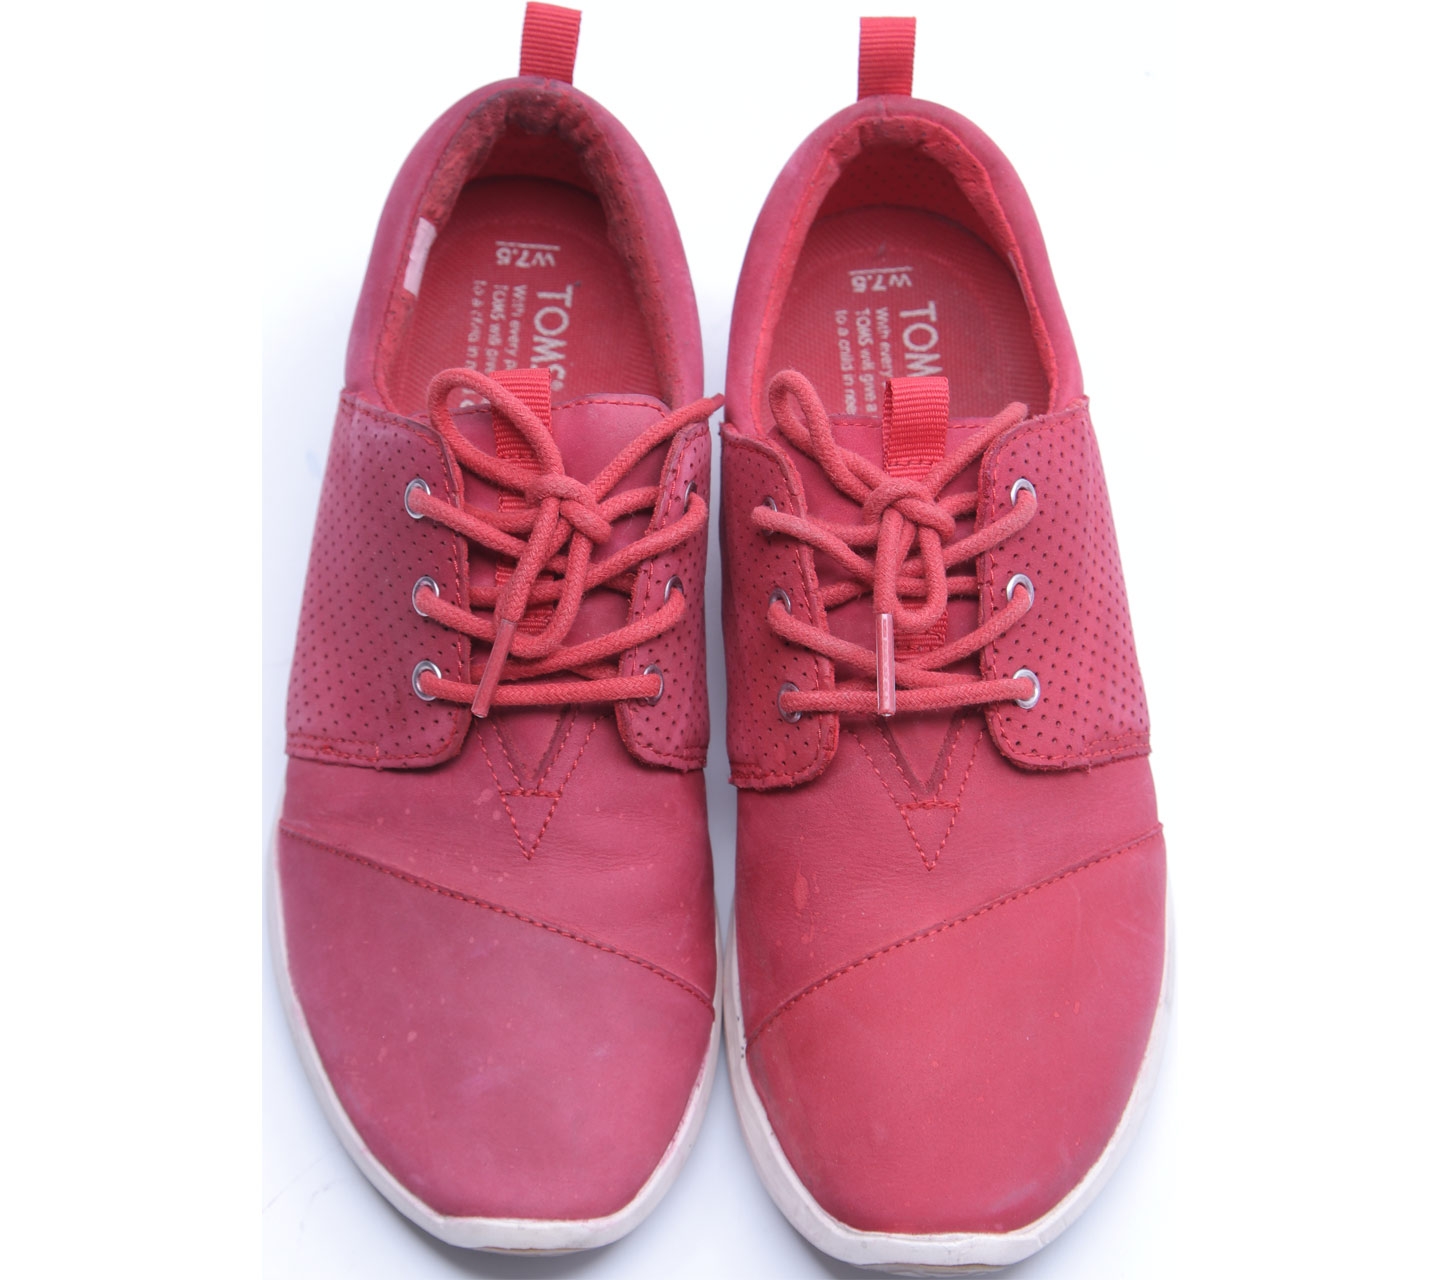 Toms Red Nubuck Women's Del Rey Sneakers